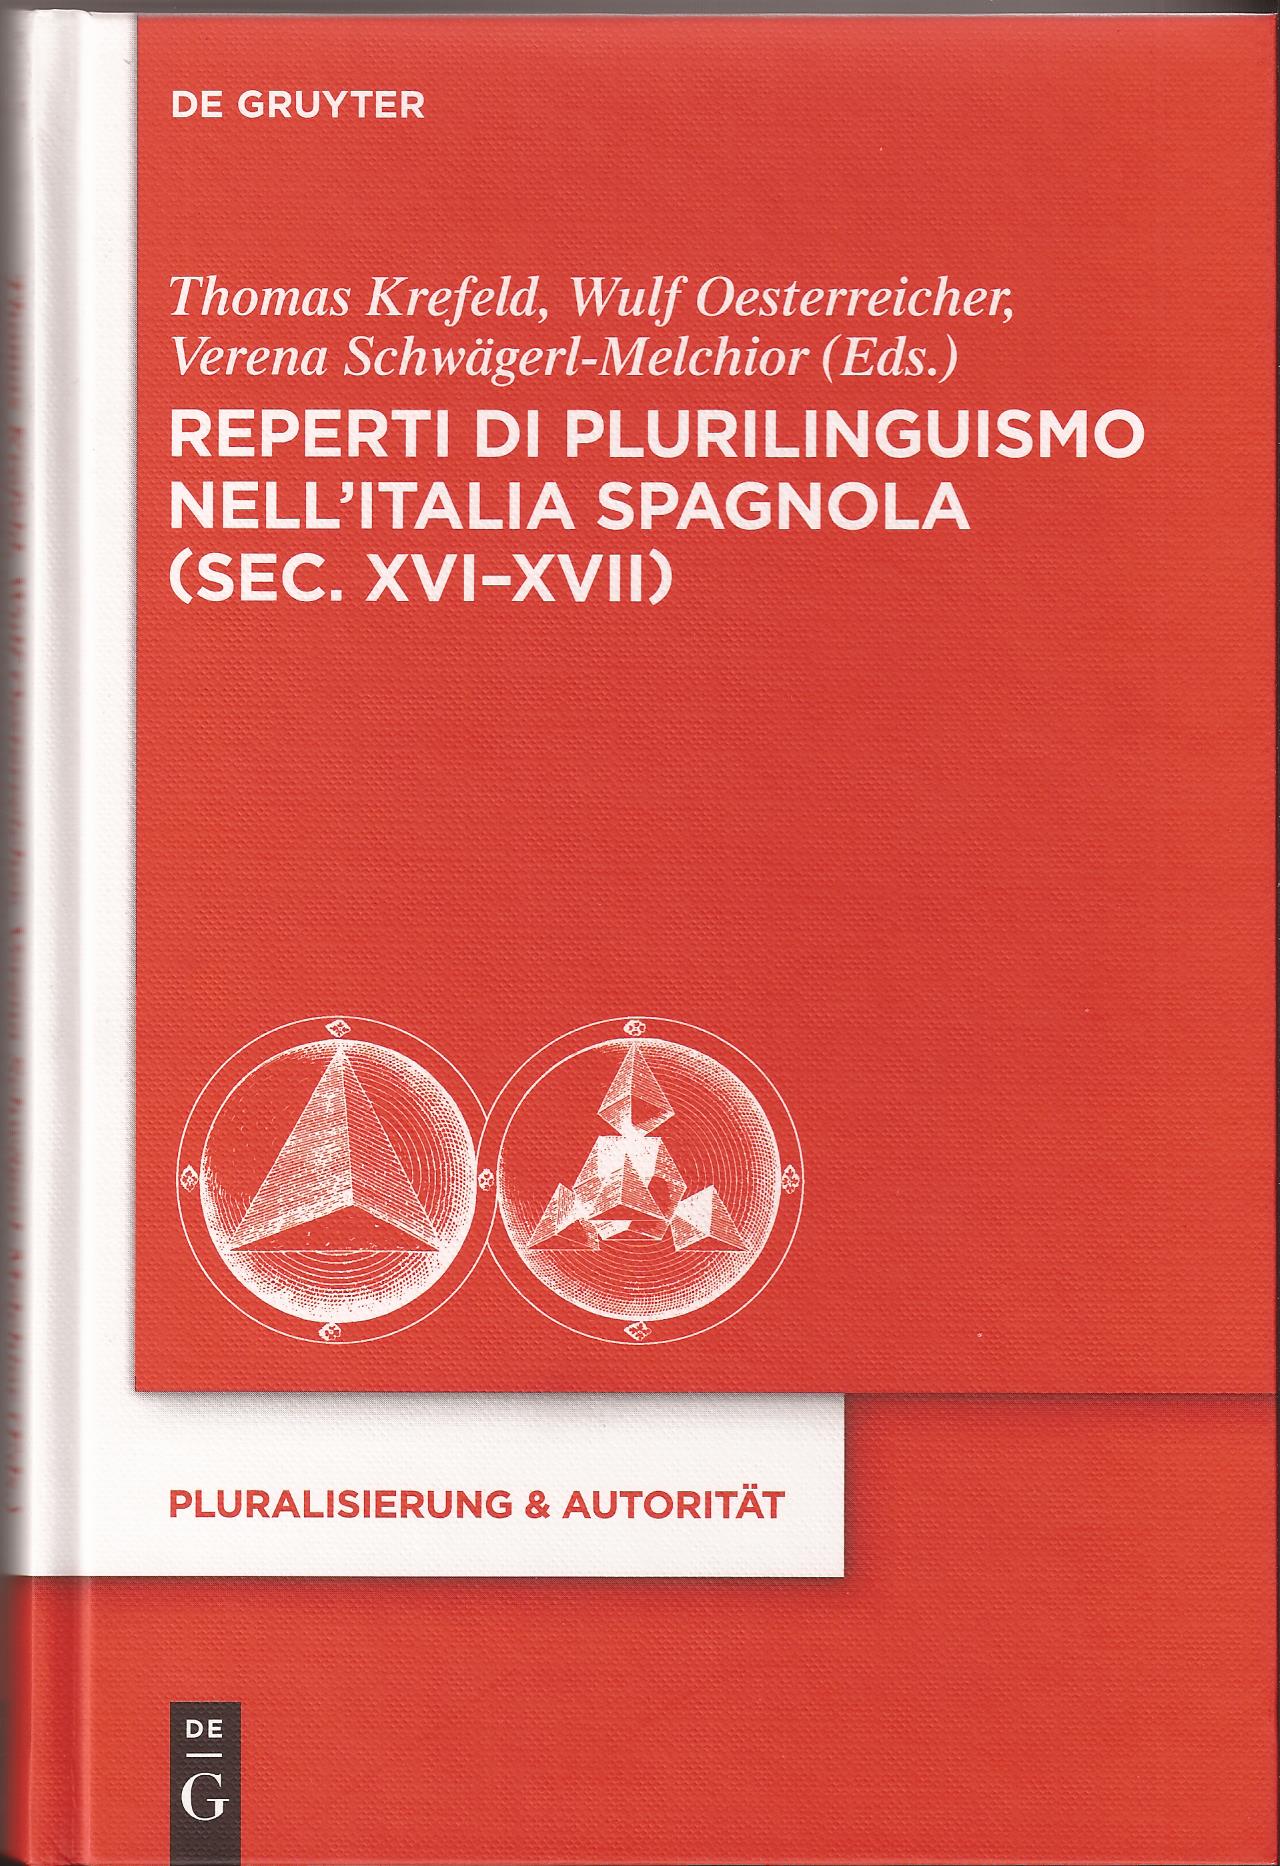 Portada libro sobre plurilinguismo en Italia